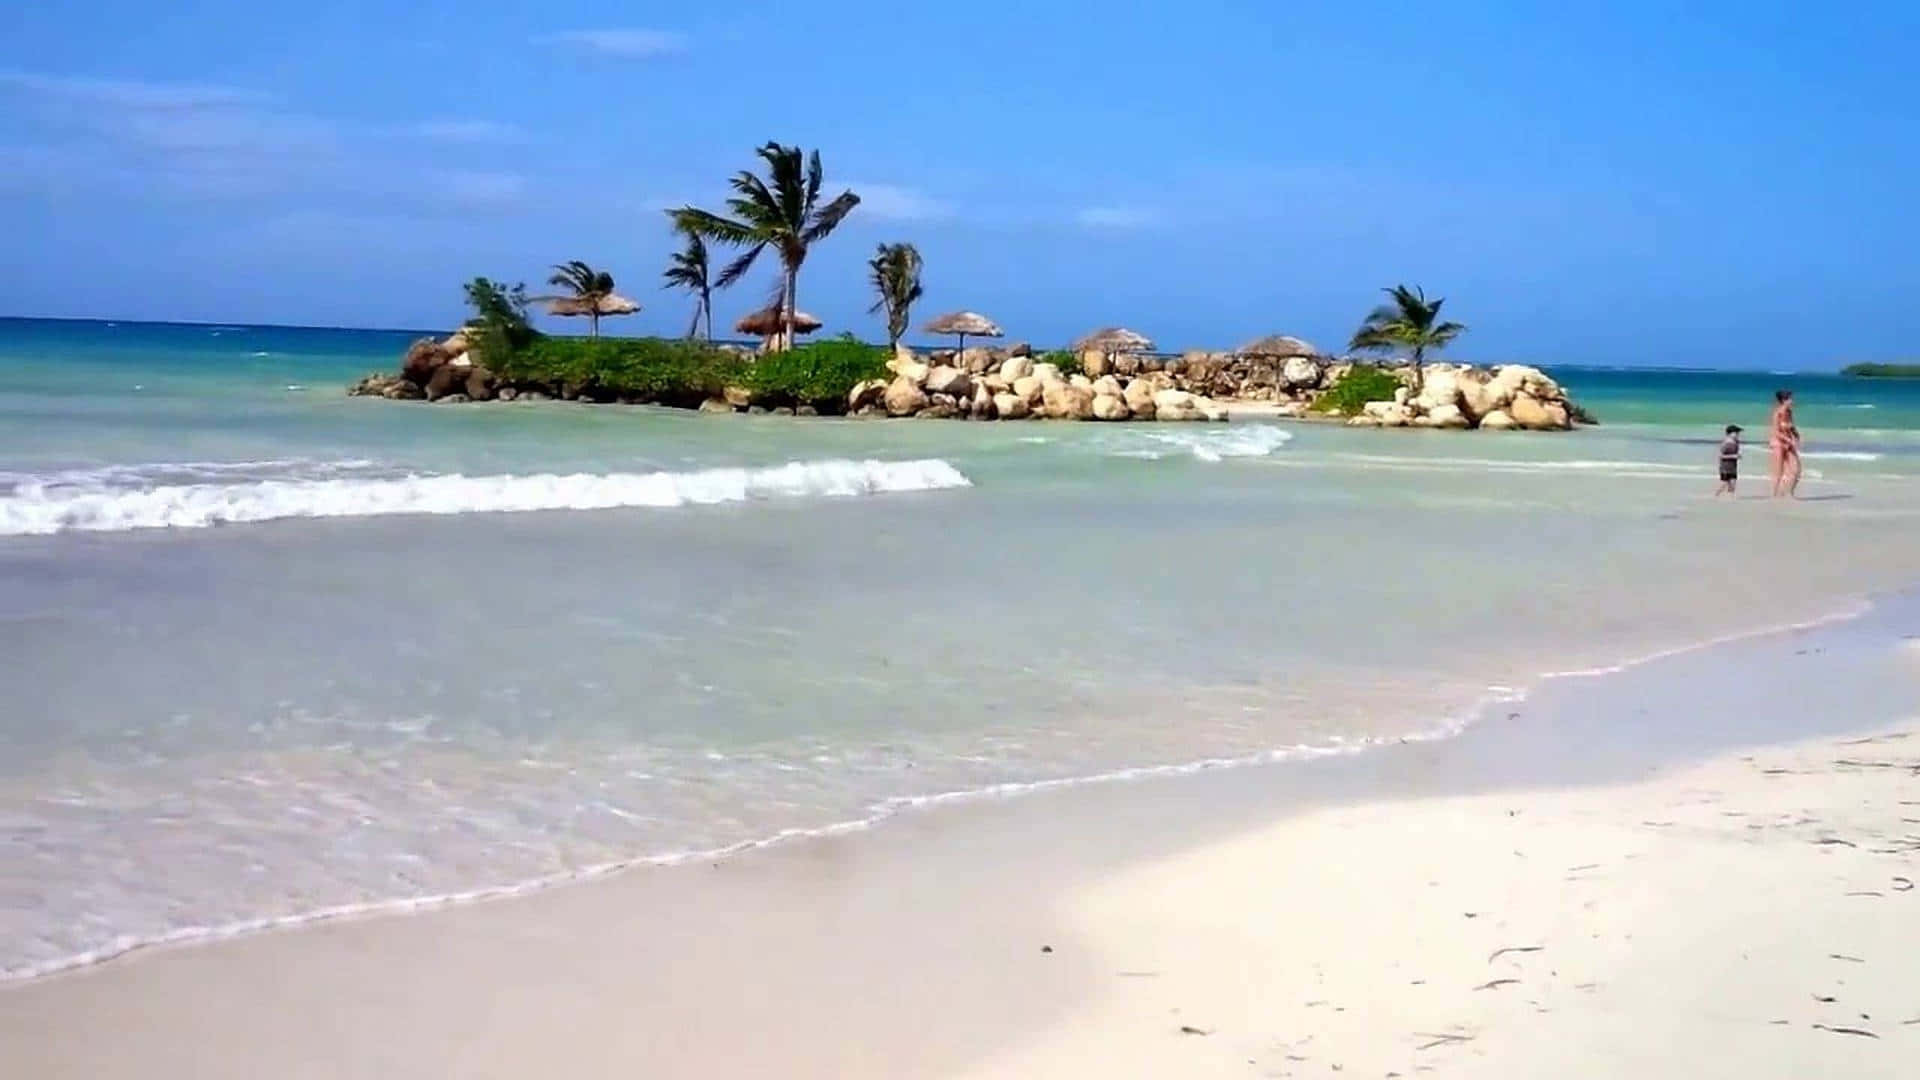 Vibranteatardecer Jamaicano Sobre Una Playa Impresionante.